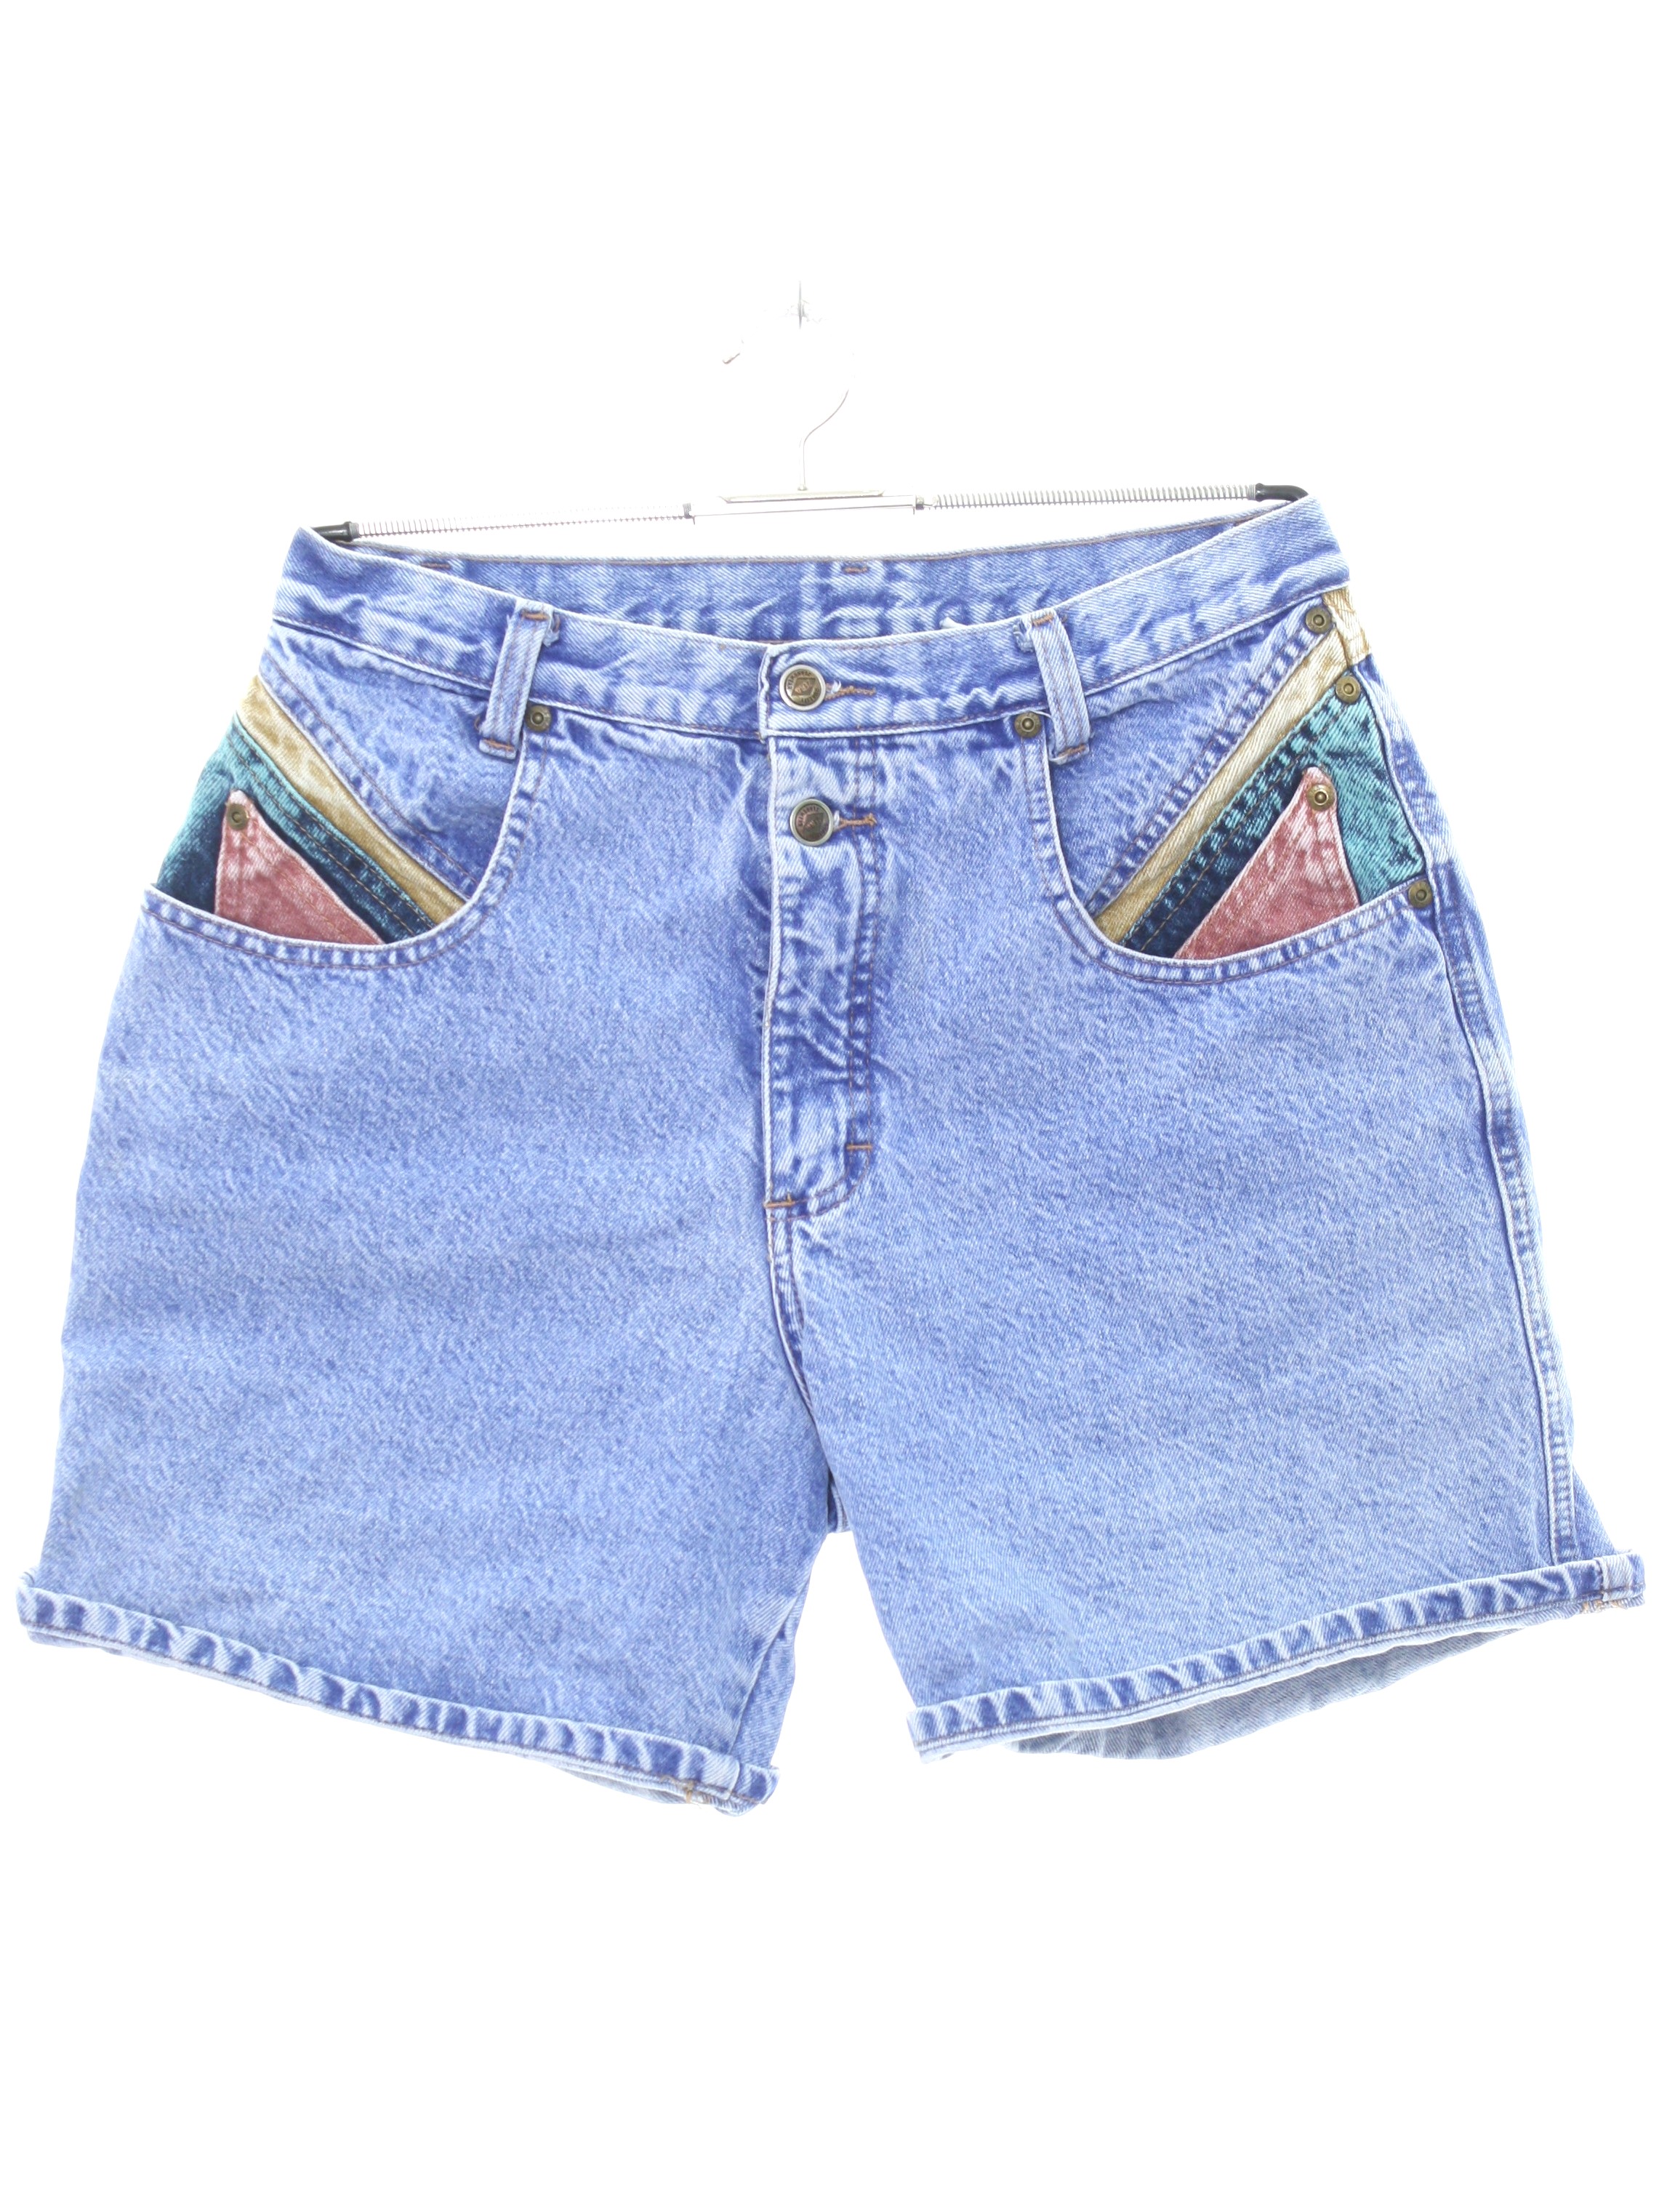 Eighties Zena Jeans Shorts: 80s -Zena Jeans- Womens faded blue, pink ...